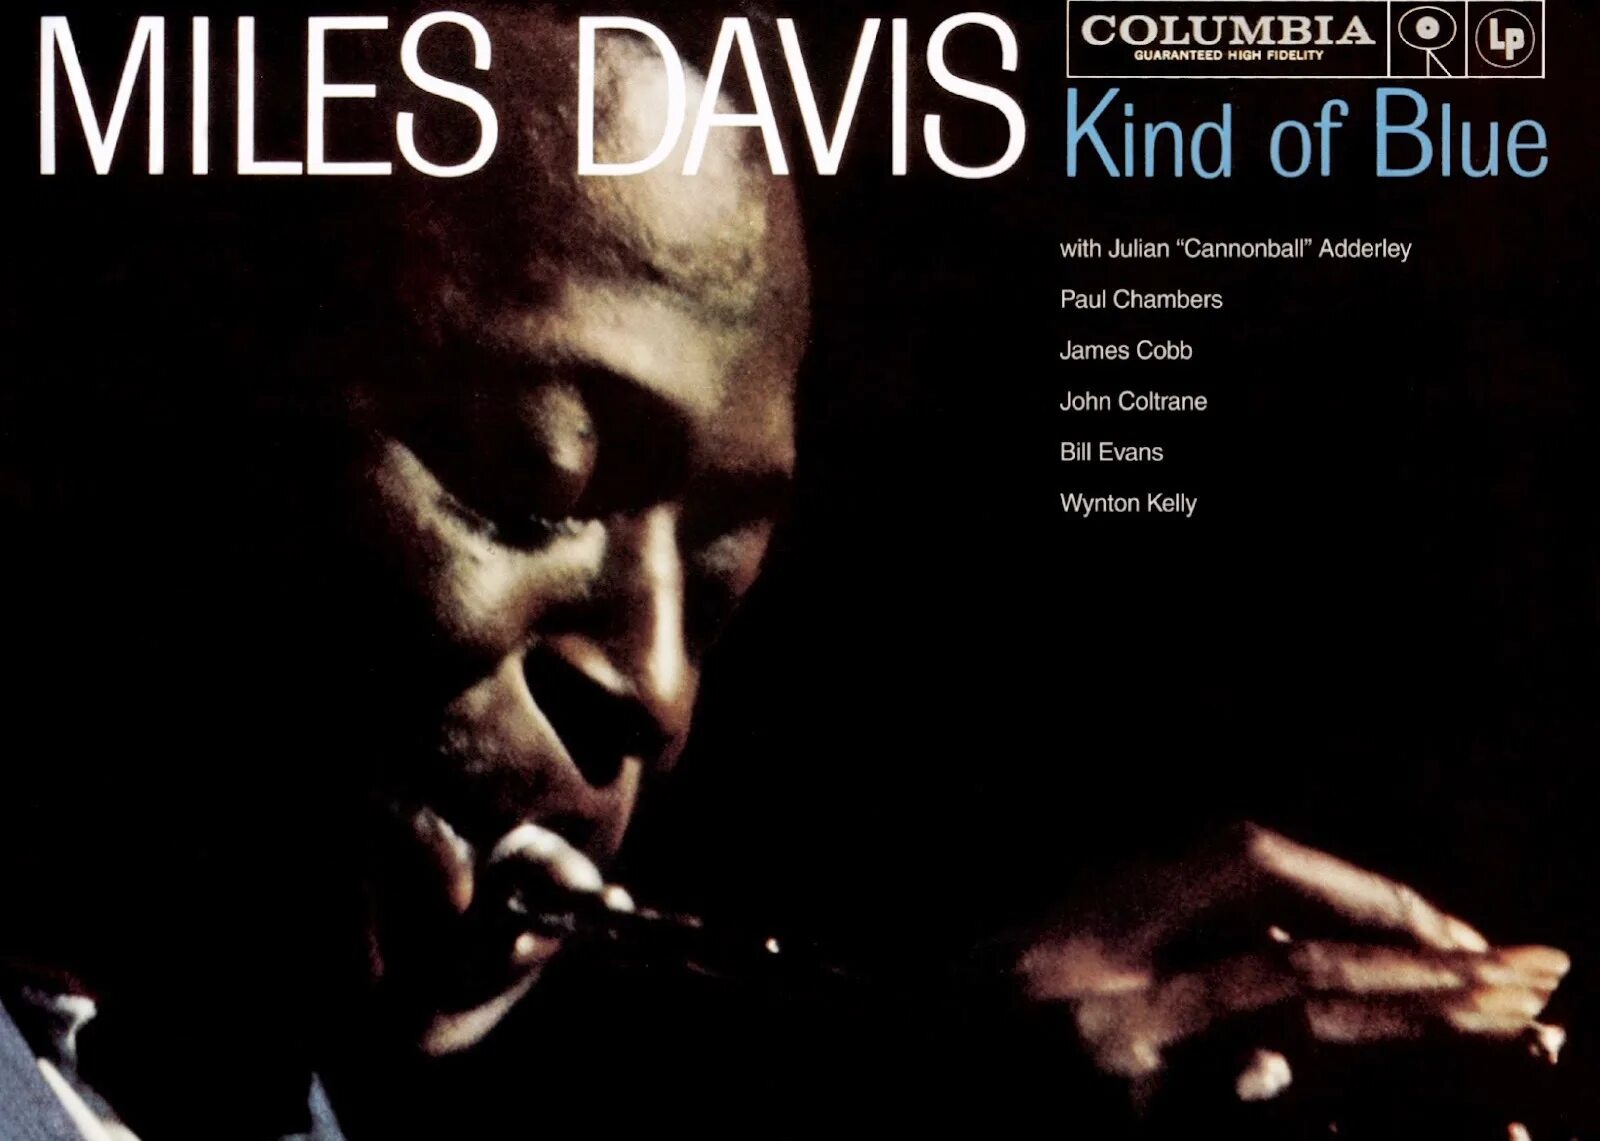 Blue miles. Kind of Blue Майлз Дэвис. Miles Davis - kind of Blue. Miles Davis - kind of Blue (1959). Miles Davis - kind of Blue (Full album) 1959.